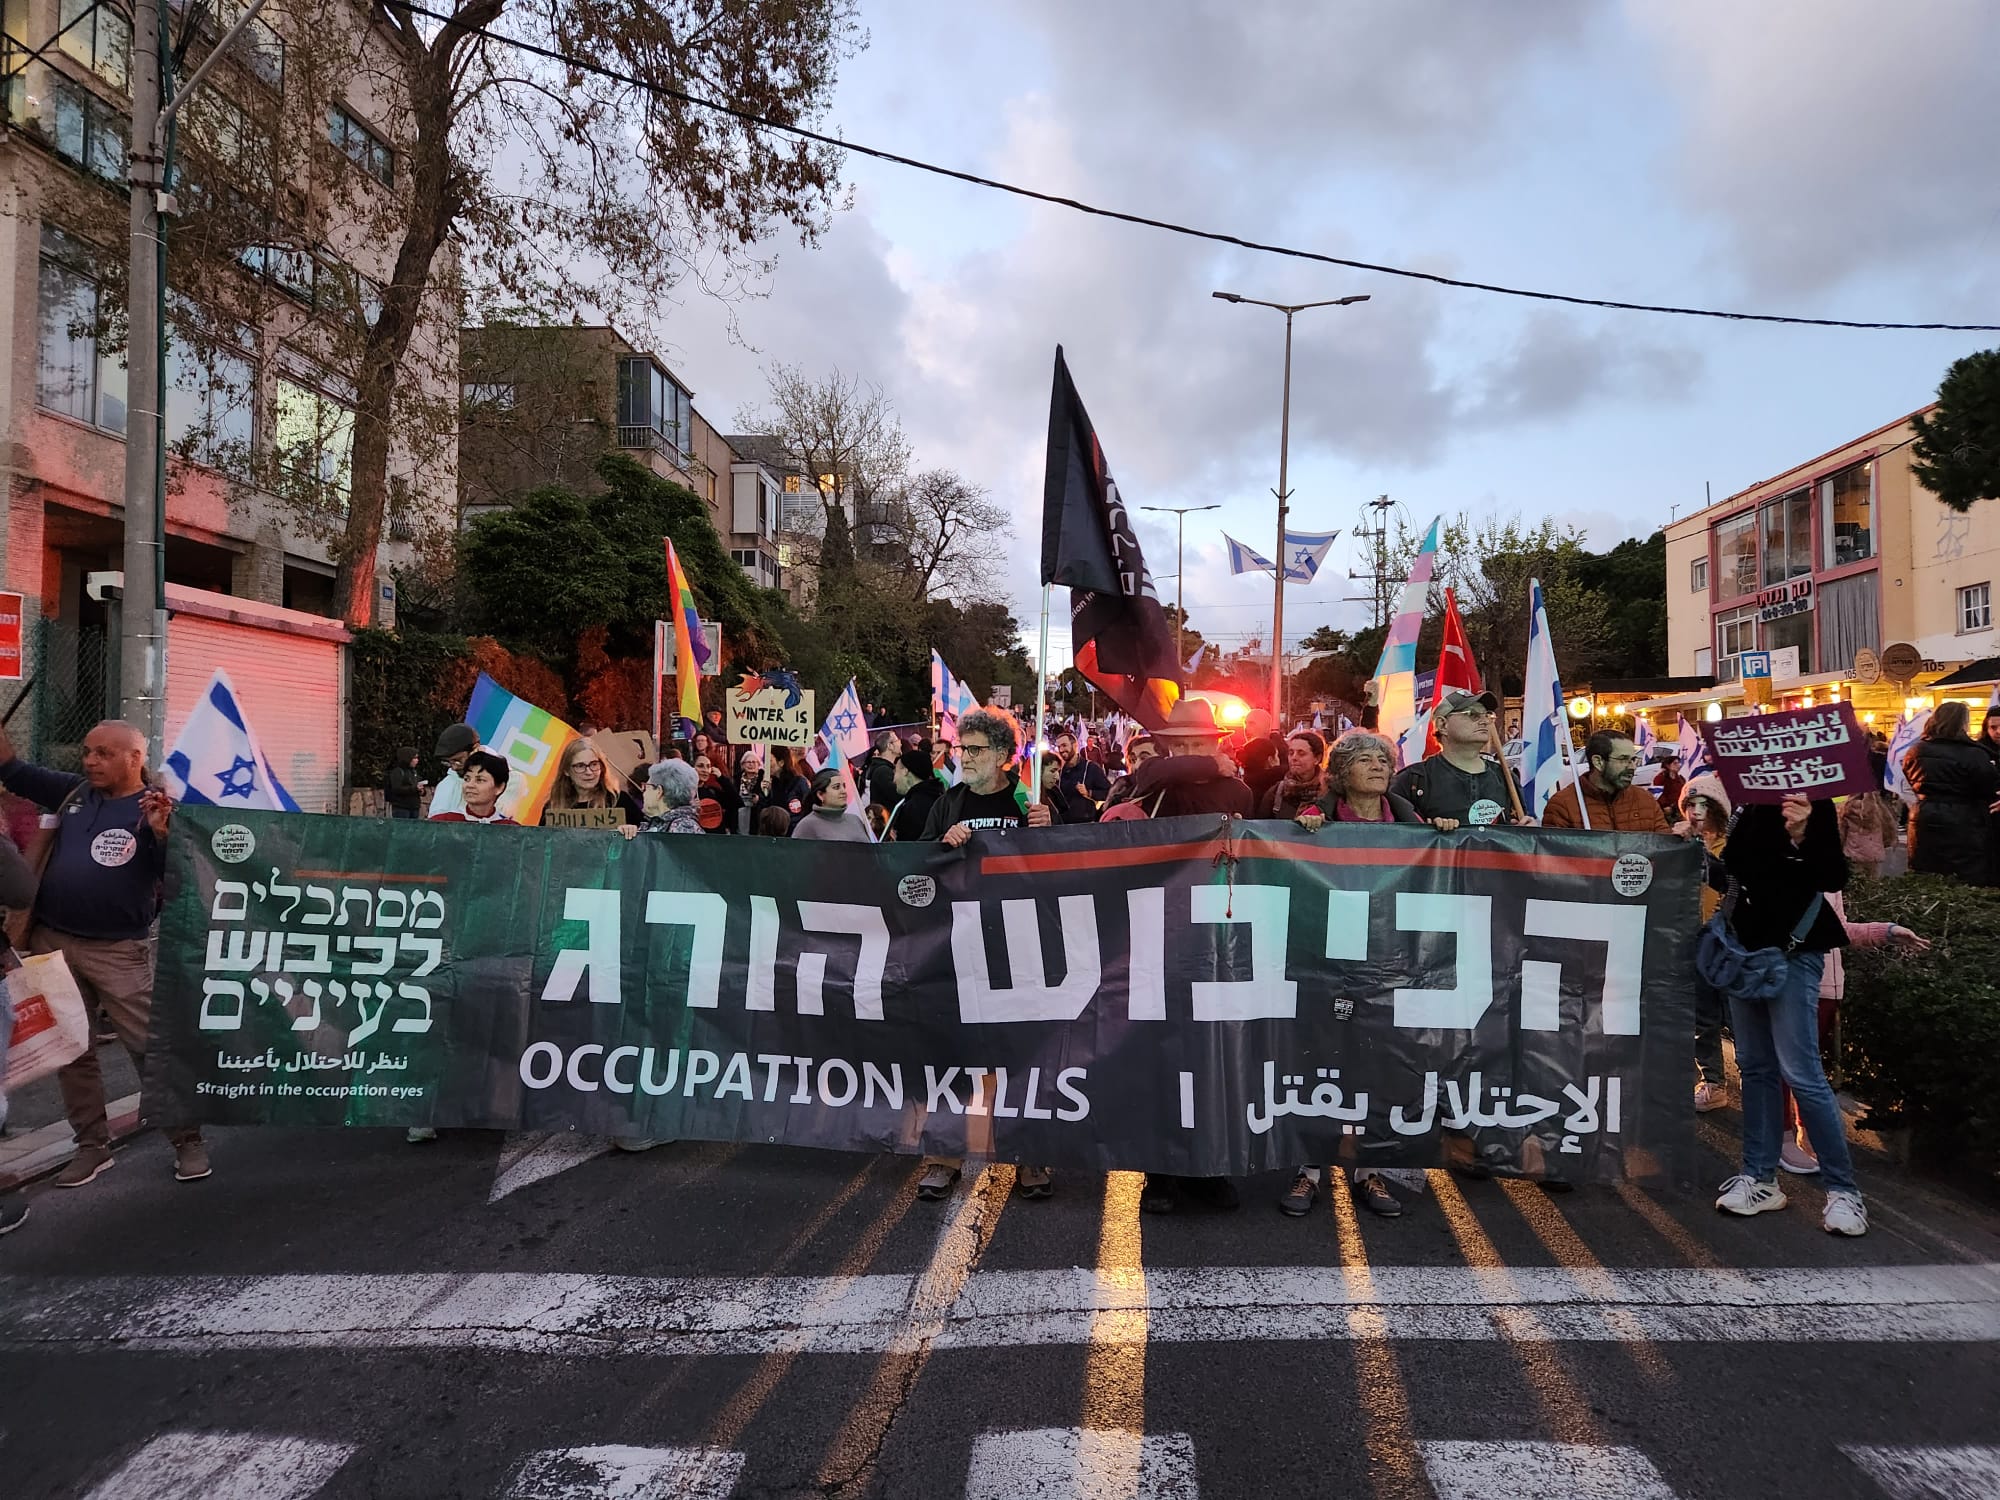 המחאה גדלה כל הזמן. מפגינים ב"גוש נגד הכיבוש" בחיפה (צילום: רנן זיו)